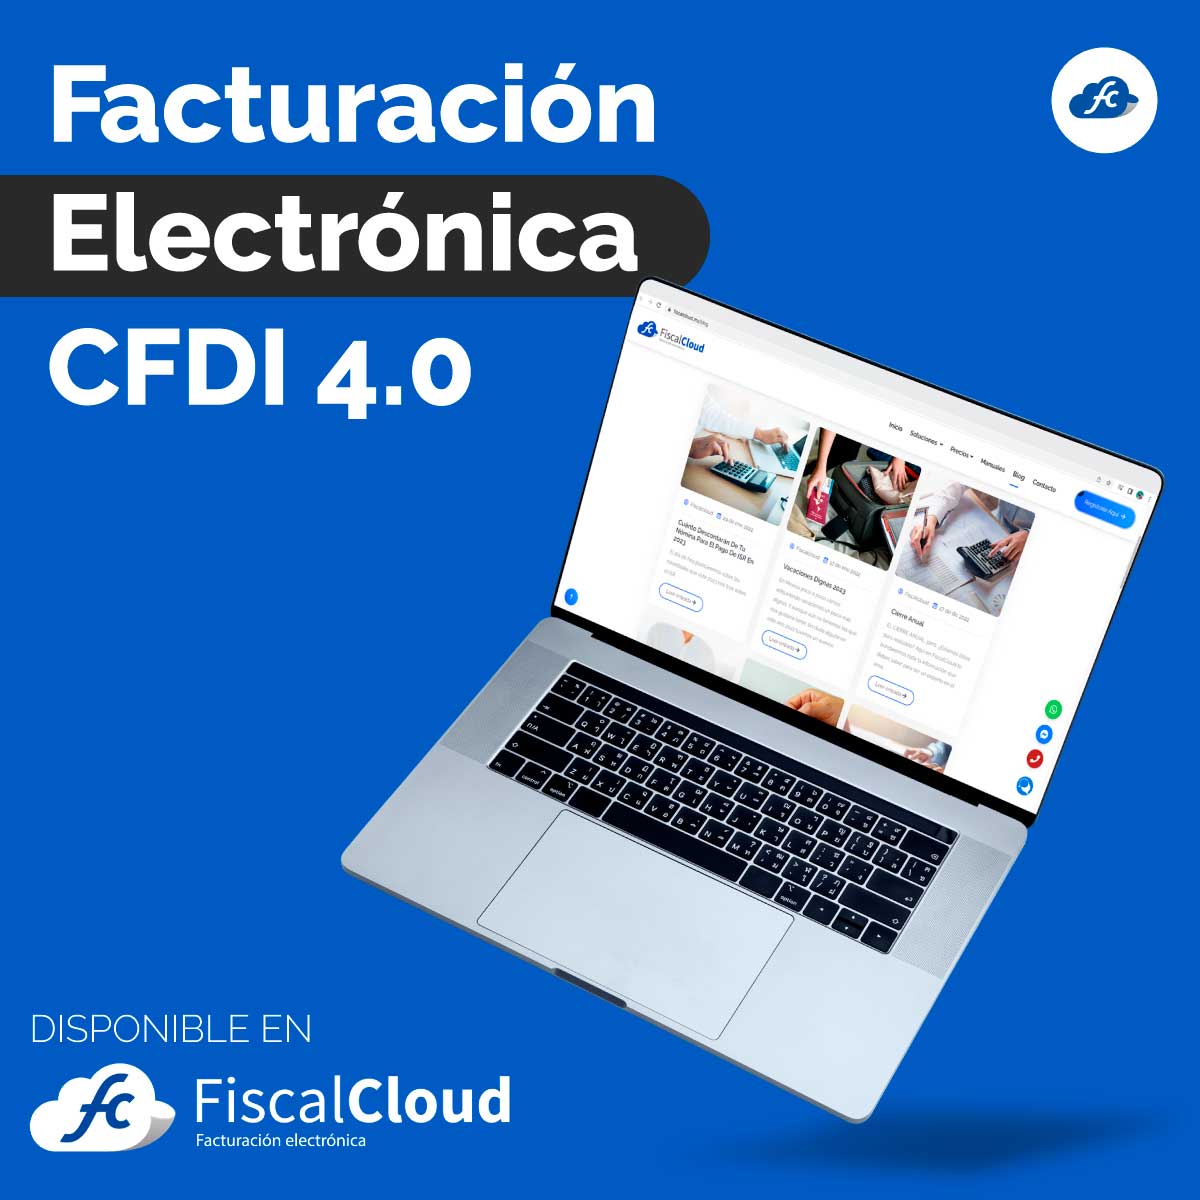 Facturación Electrónica CFDI 4.0, comienza a generar tus facturas CFDI 4.0, facturacion cfdi 4.0 disponible en Fiscalcloud